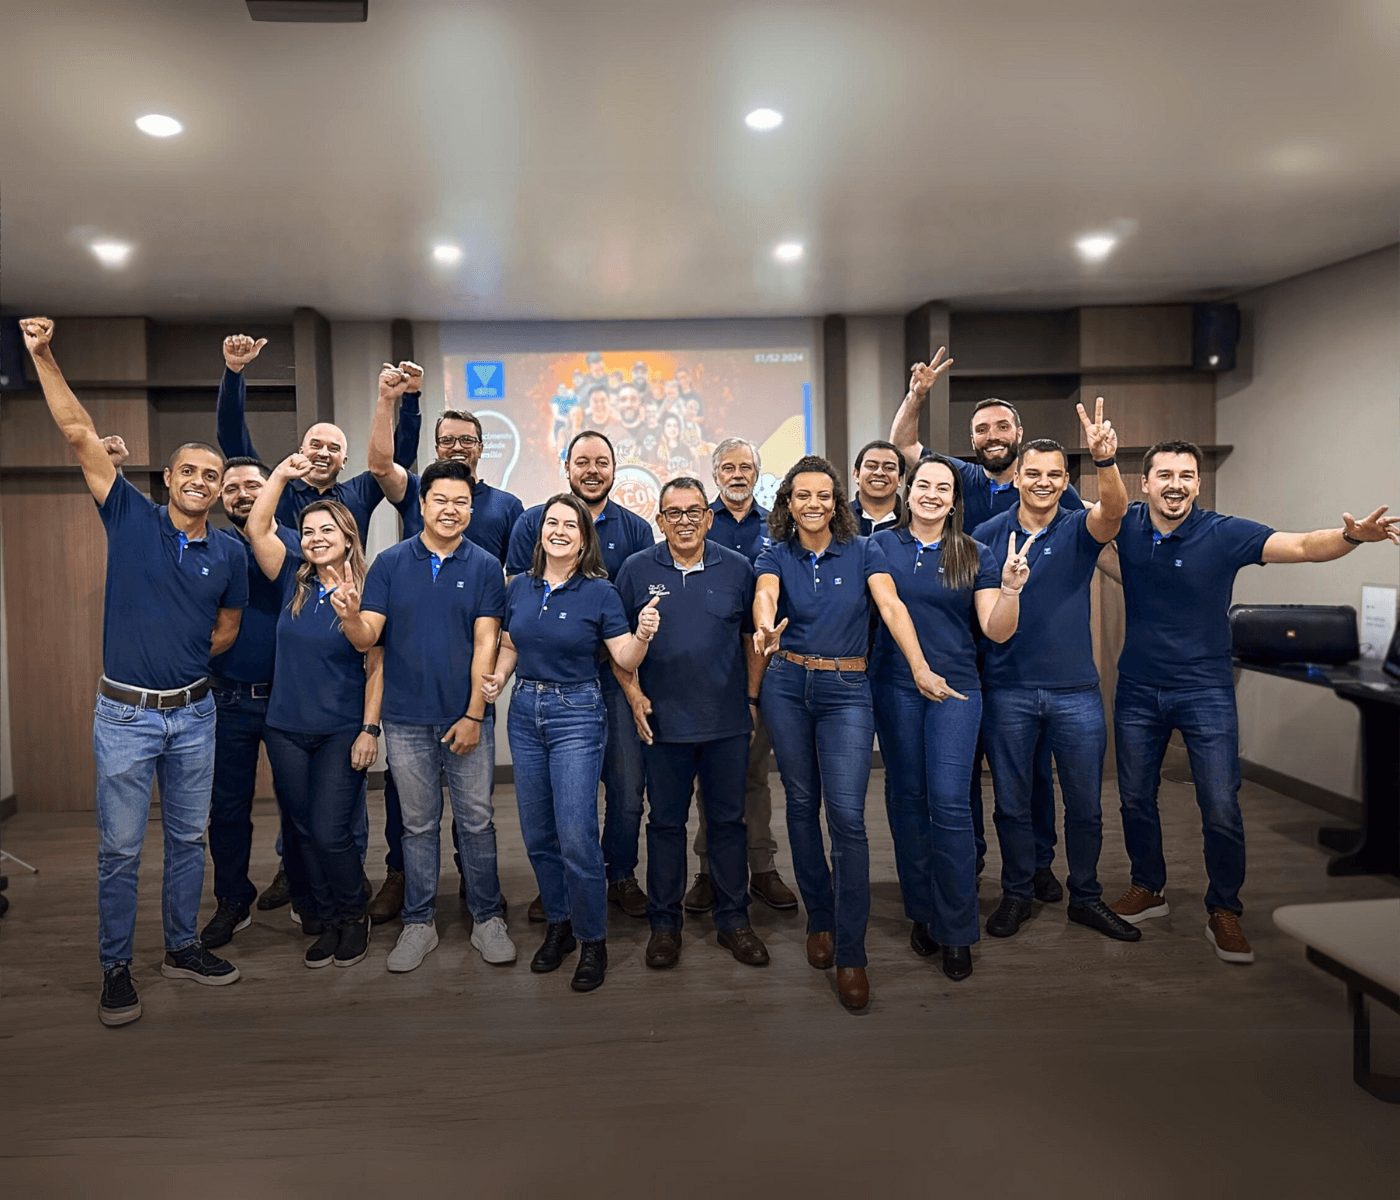 Reunião do time Suínos da Vetanco promove integração e fortalecimento da equipe